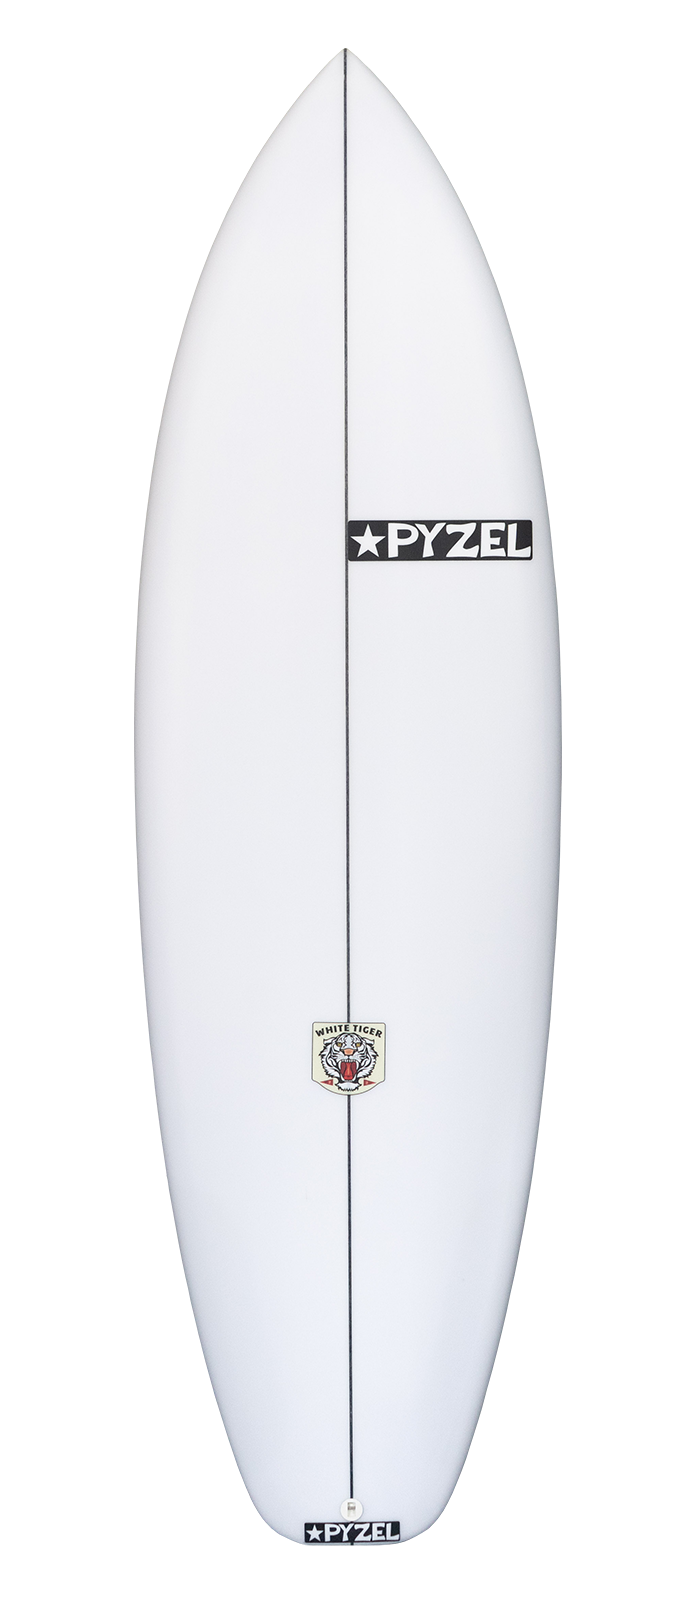 Planche de surf PYZEL White Tiger 5'6 - 30,1Lts FCSII